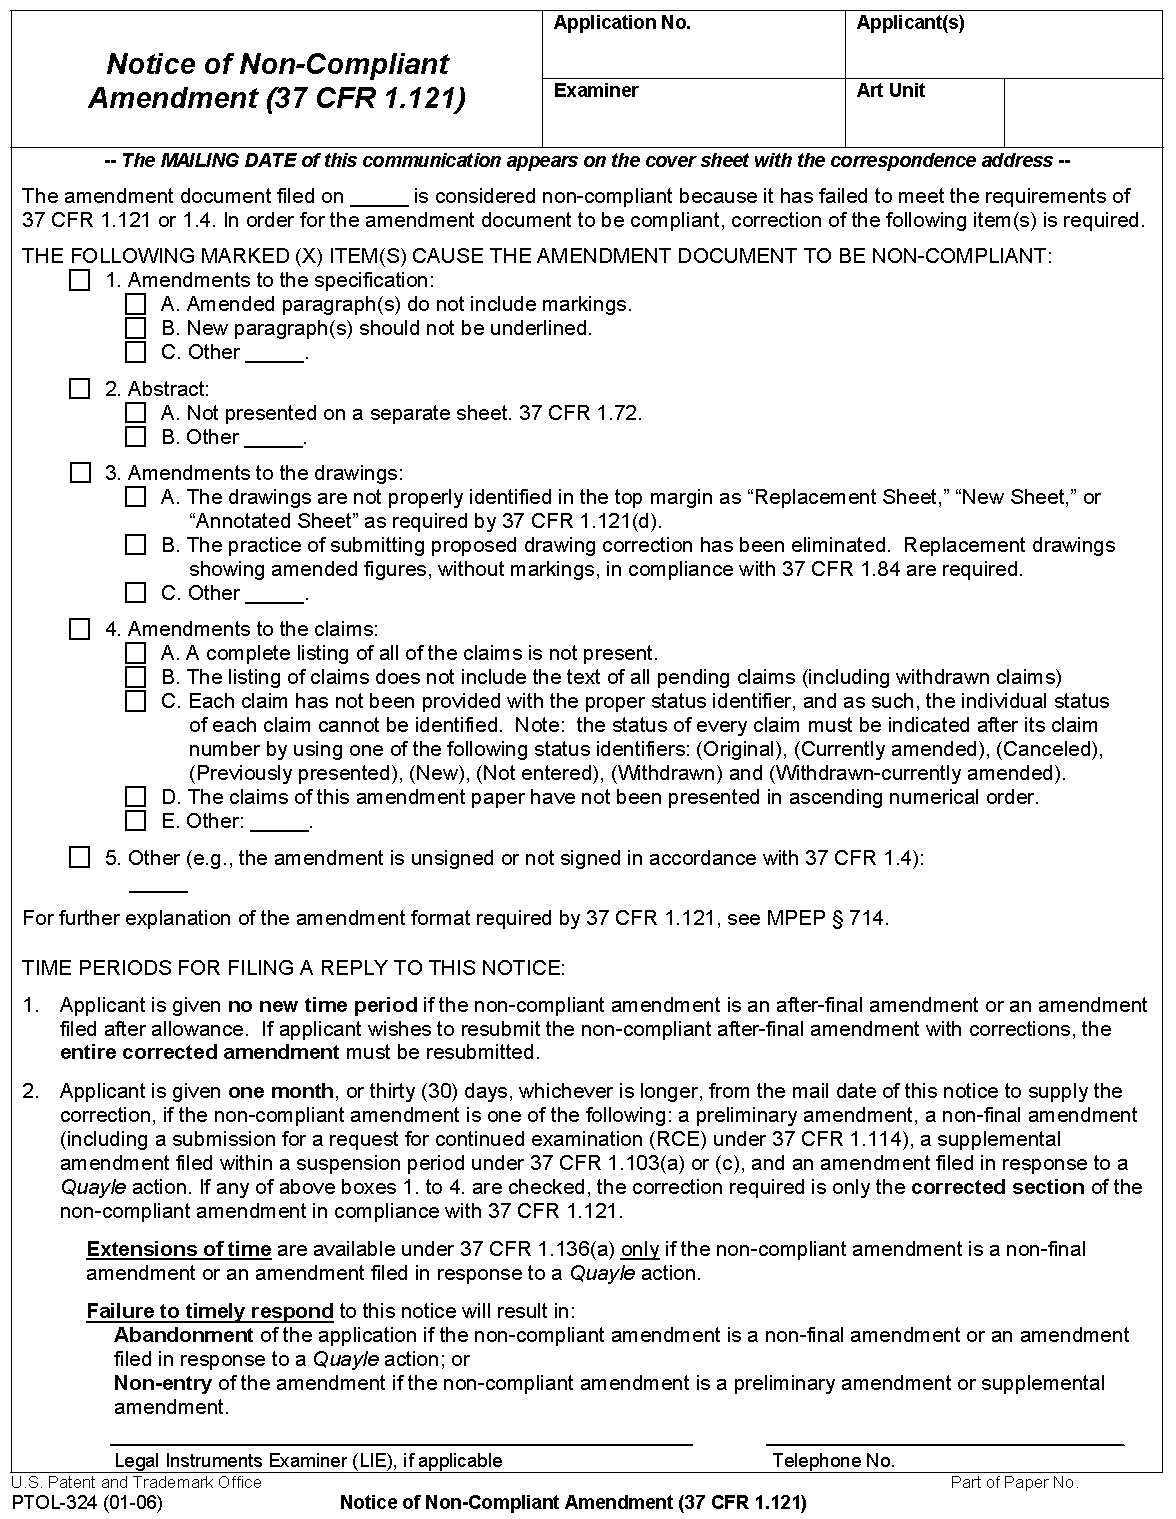 form ptol324 notice of non-compliant amendment (37 cfr 1.121)